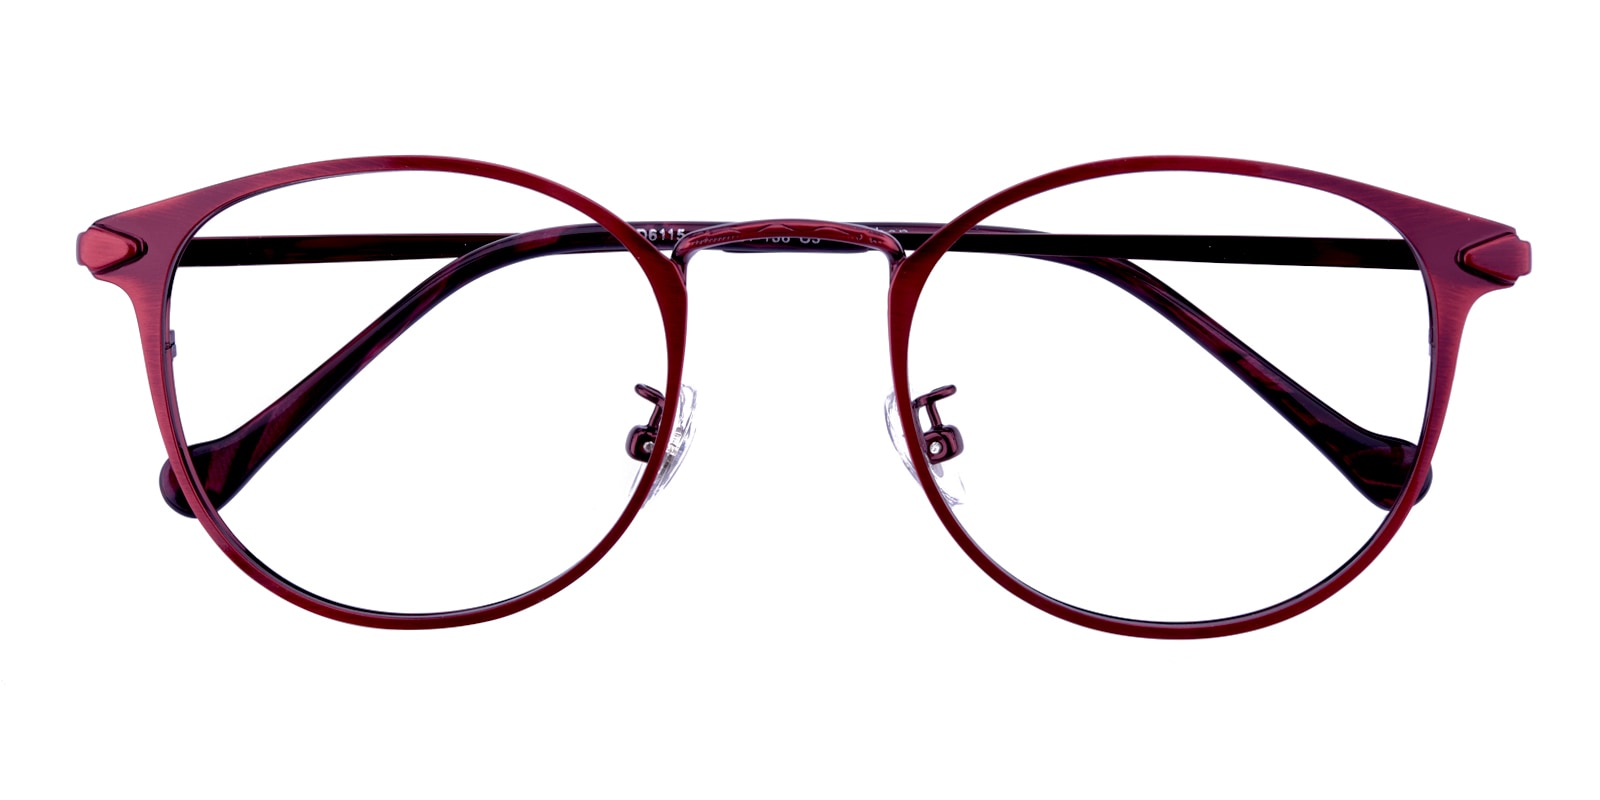 Round Eyeglasses, Full Frame Red Metal - FM1182